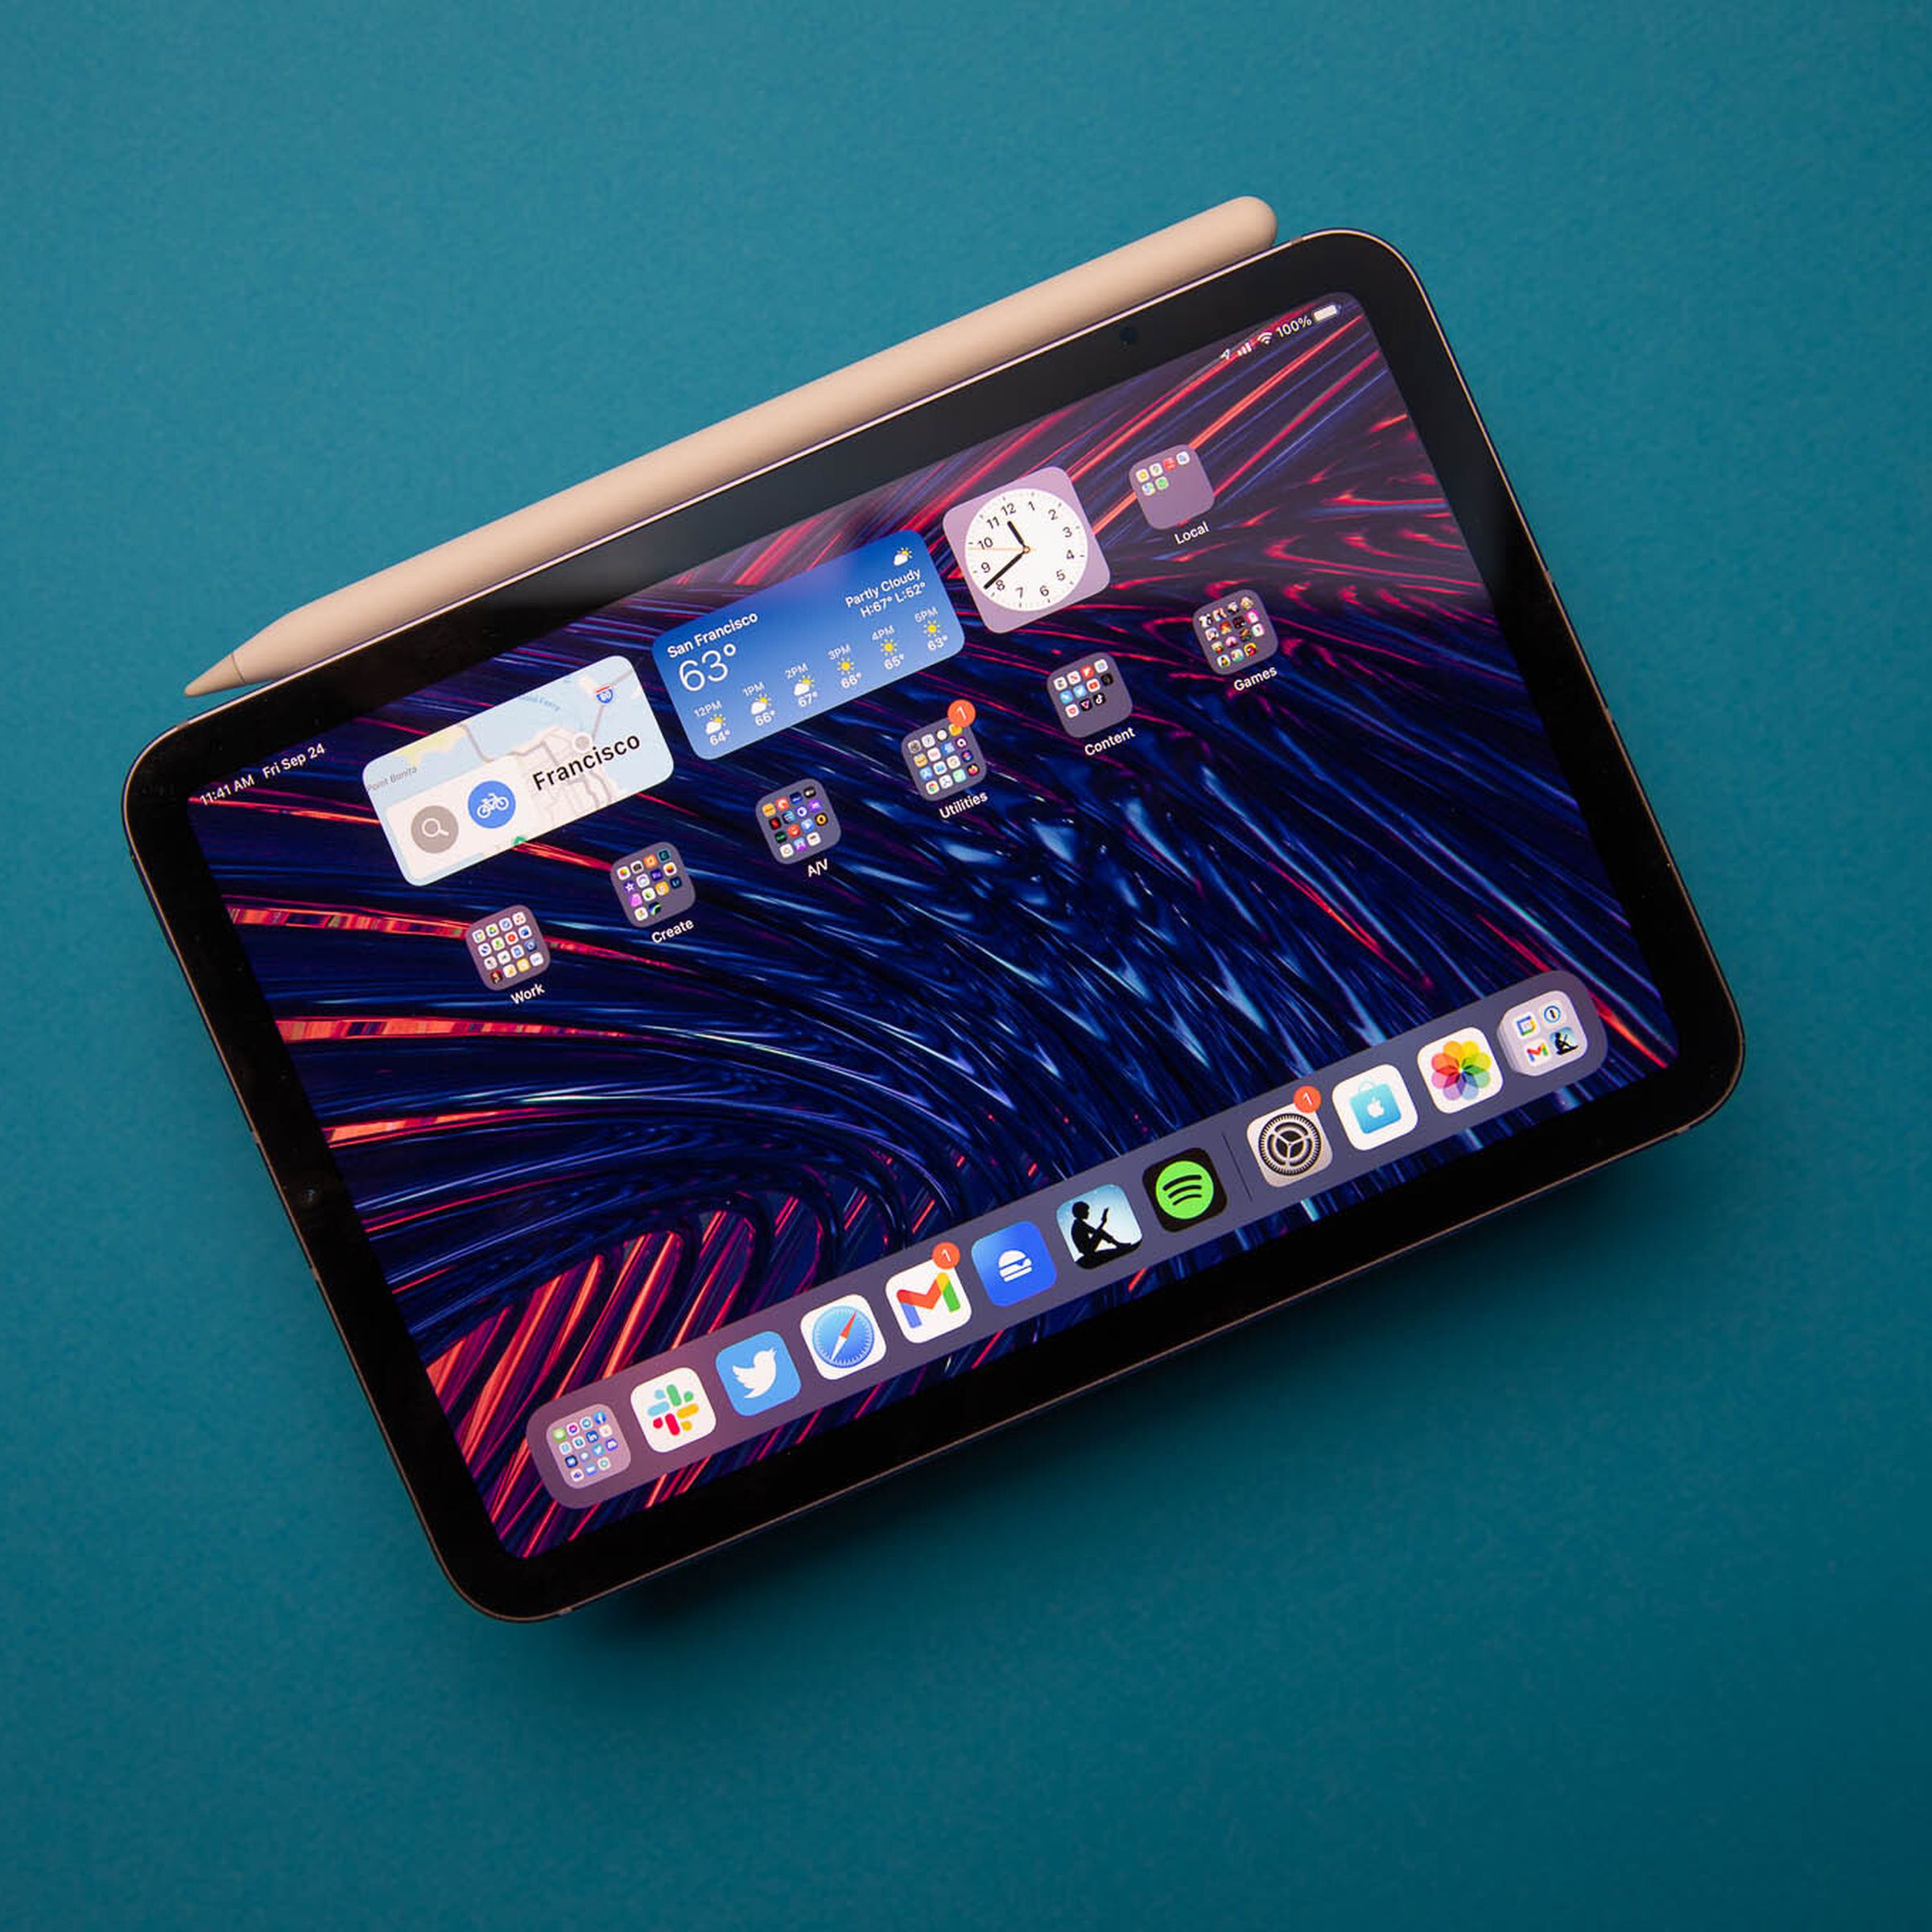 青の背景に第 2 世代の Apple Pencil が取り付けられた 2021 年 iPad mini の写真